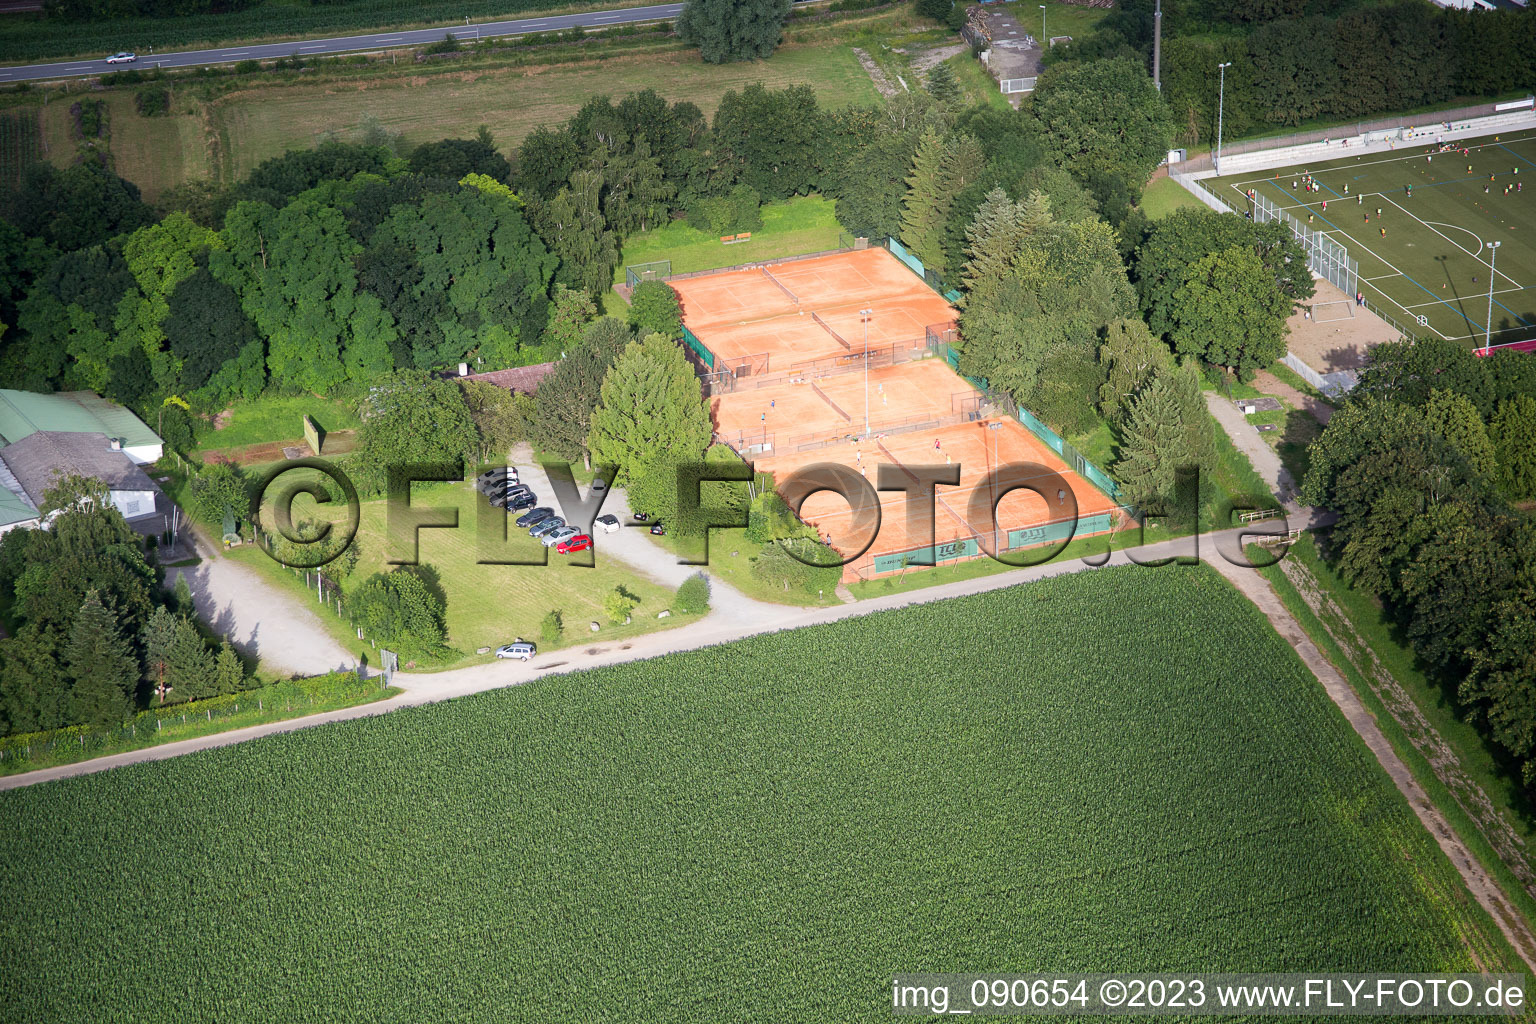 Laudenbach im Bundesland Baden-Württemberg, Deutschland aus der Luft betrachtet